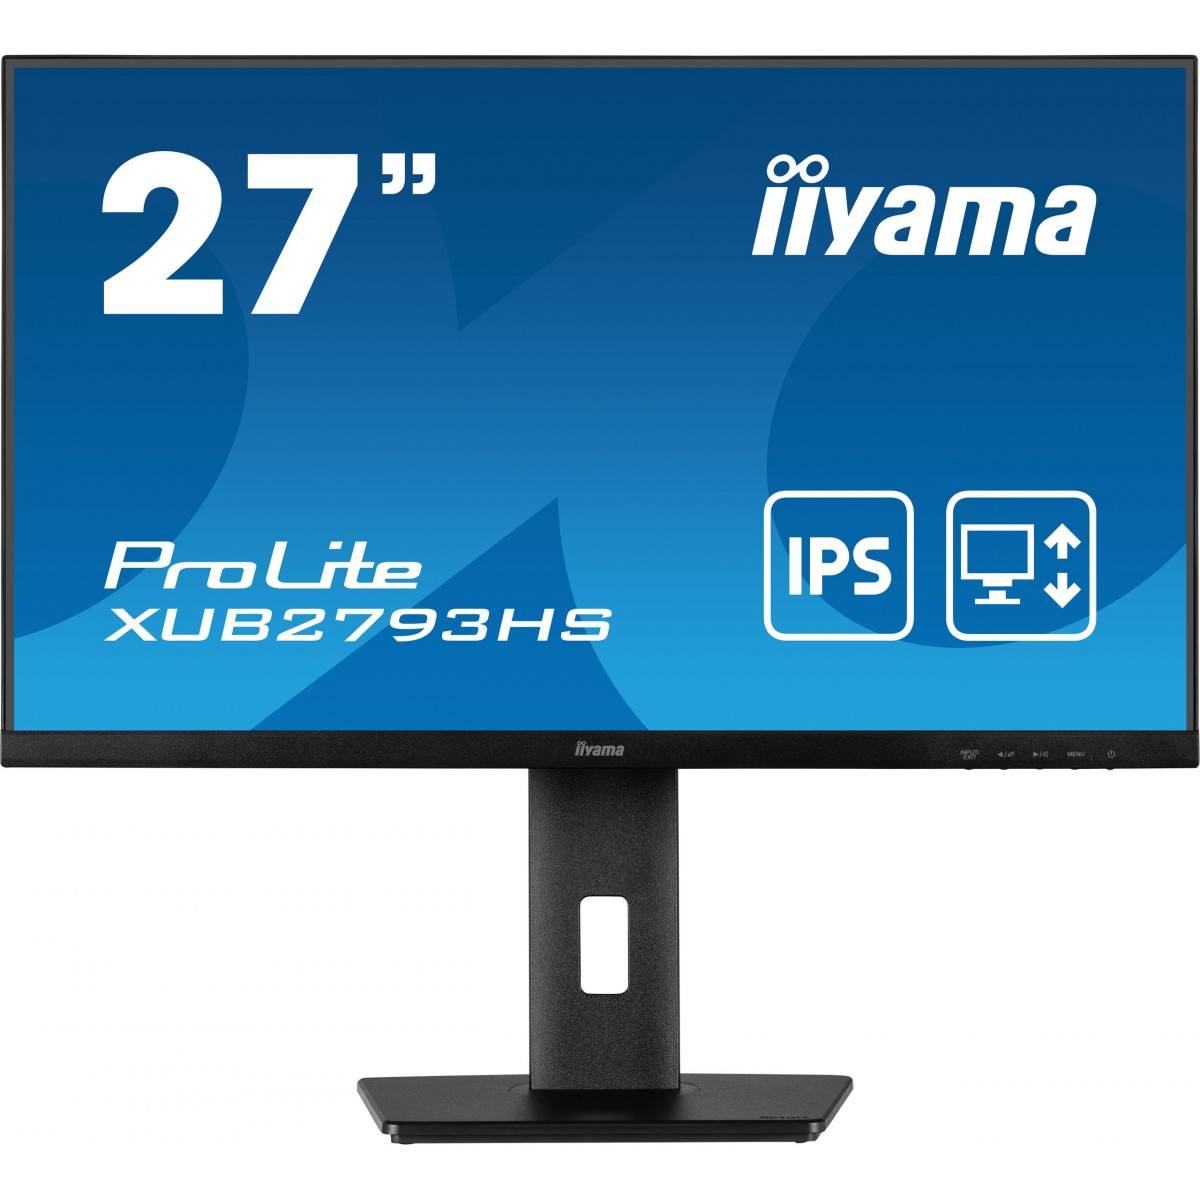 Iiyama 27W LCD Business Full HD IPS - Flat Screen - 27